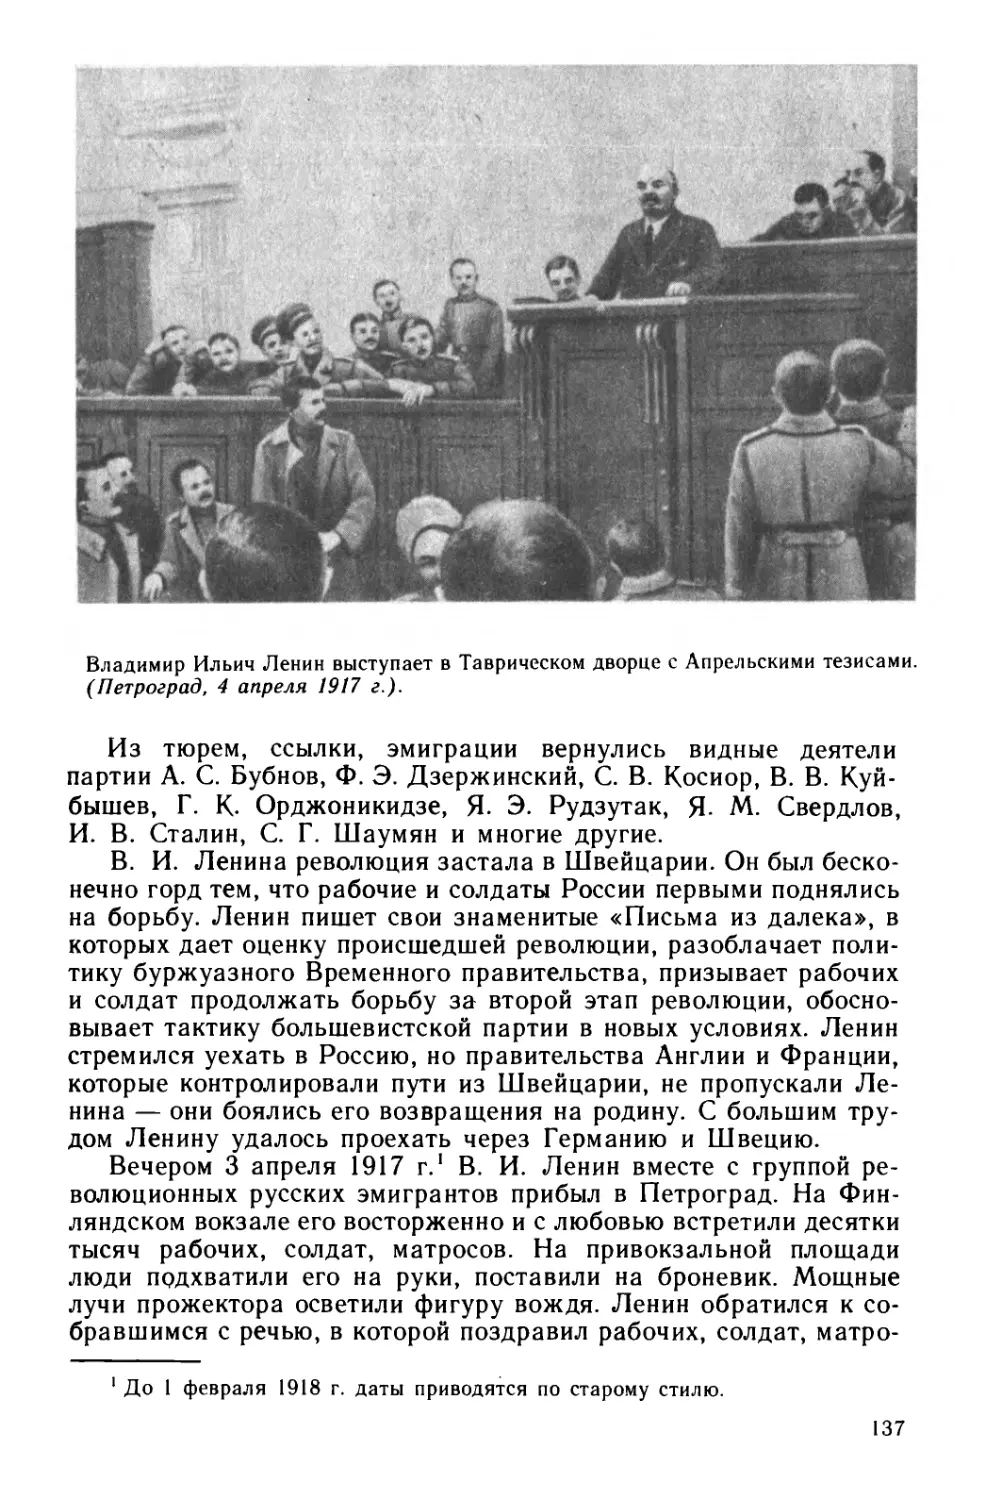 § 29. Ленинский план перехода от буржуазно-демократической революции к социалистической